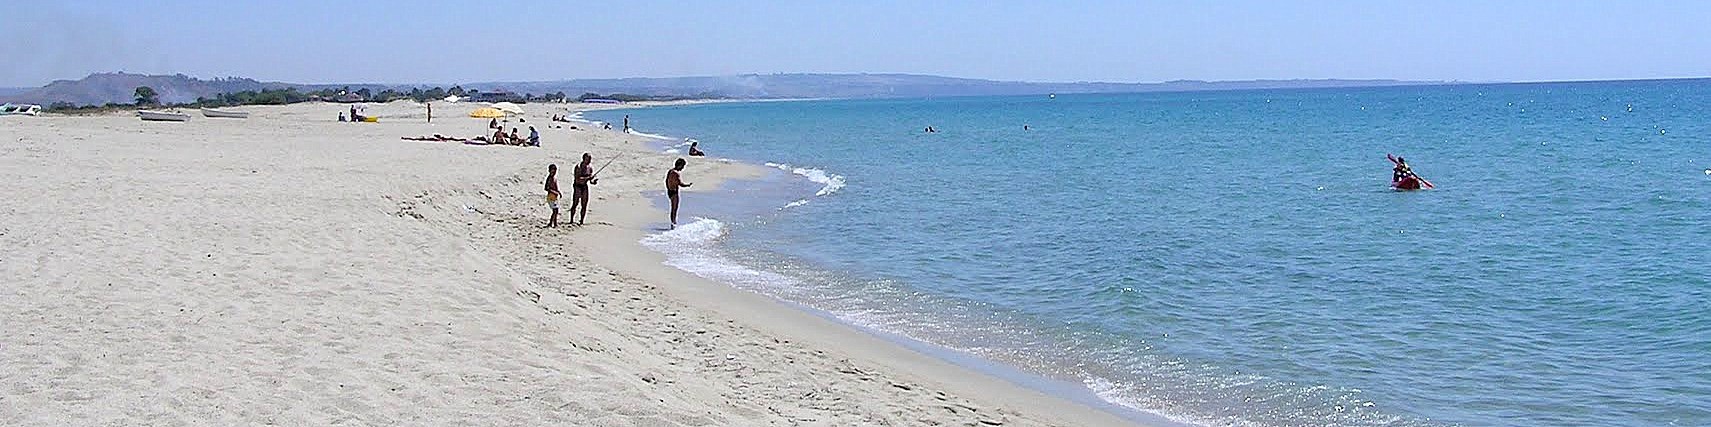 Belcastro Marina, kilometry volných pláží s bělostným pískem